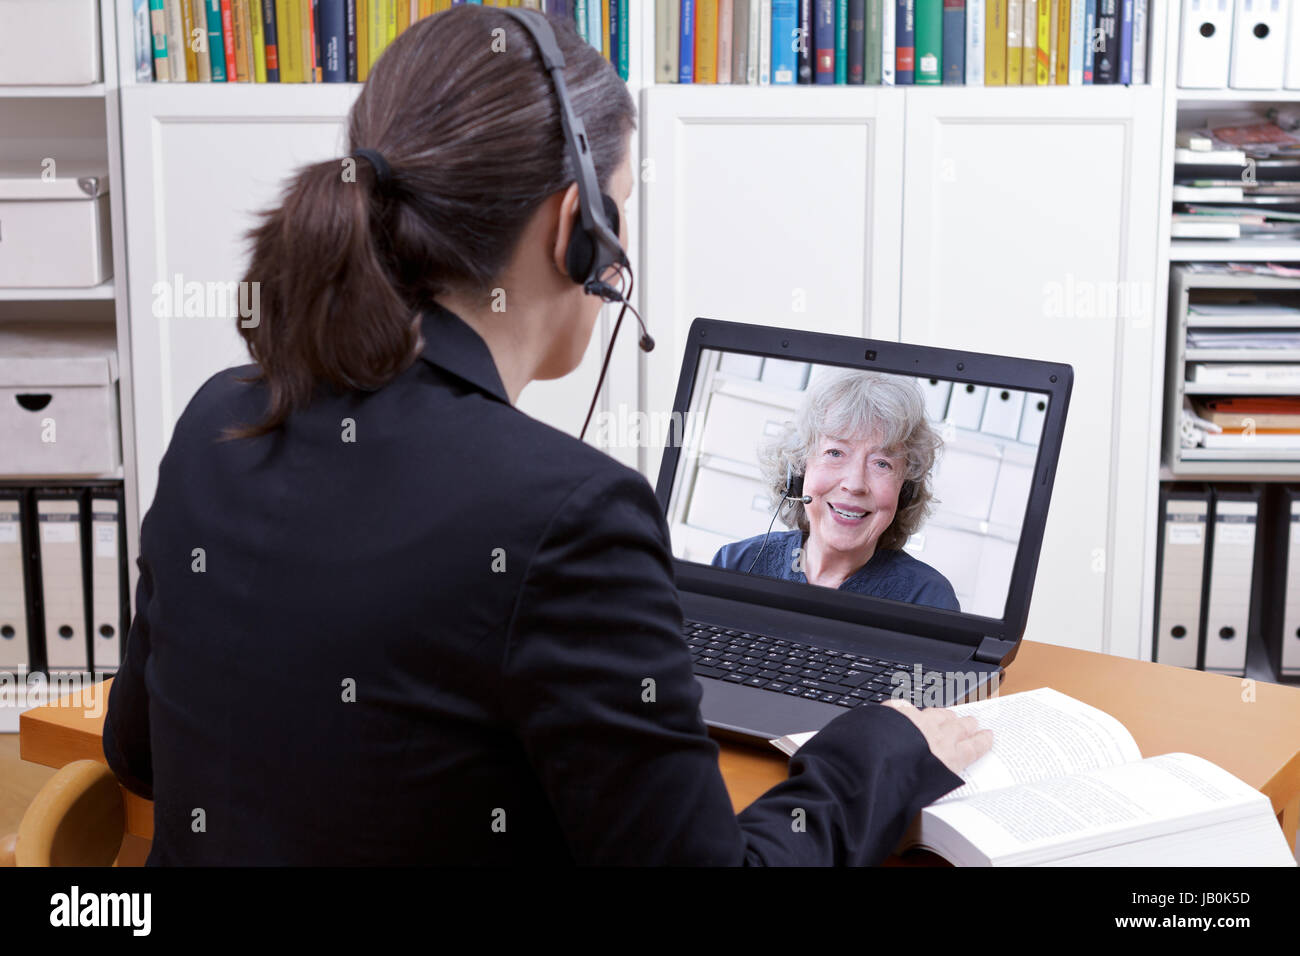 Frau mit Headset vor Ihrem Laptop und ein Buch, einen on-line-Video mit einer älteren weiblichen Kunden oder Auftraggeber, Text Chat Raum Stockfoto